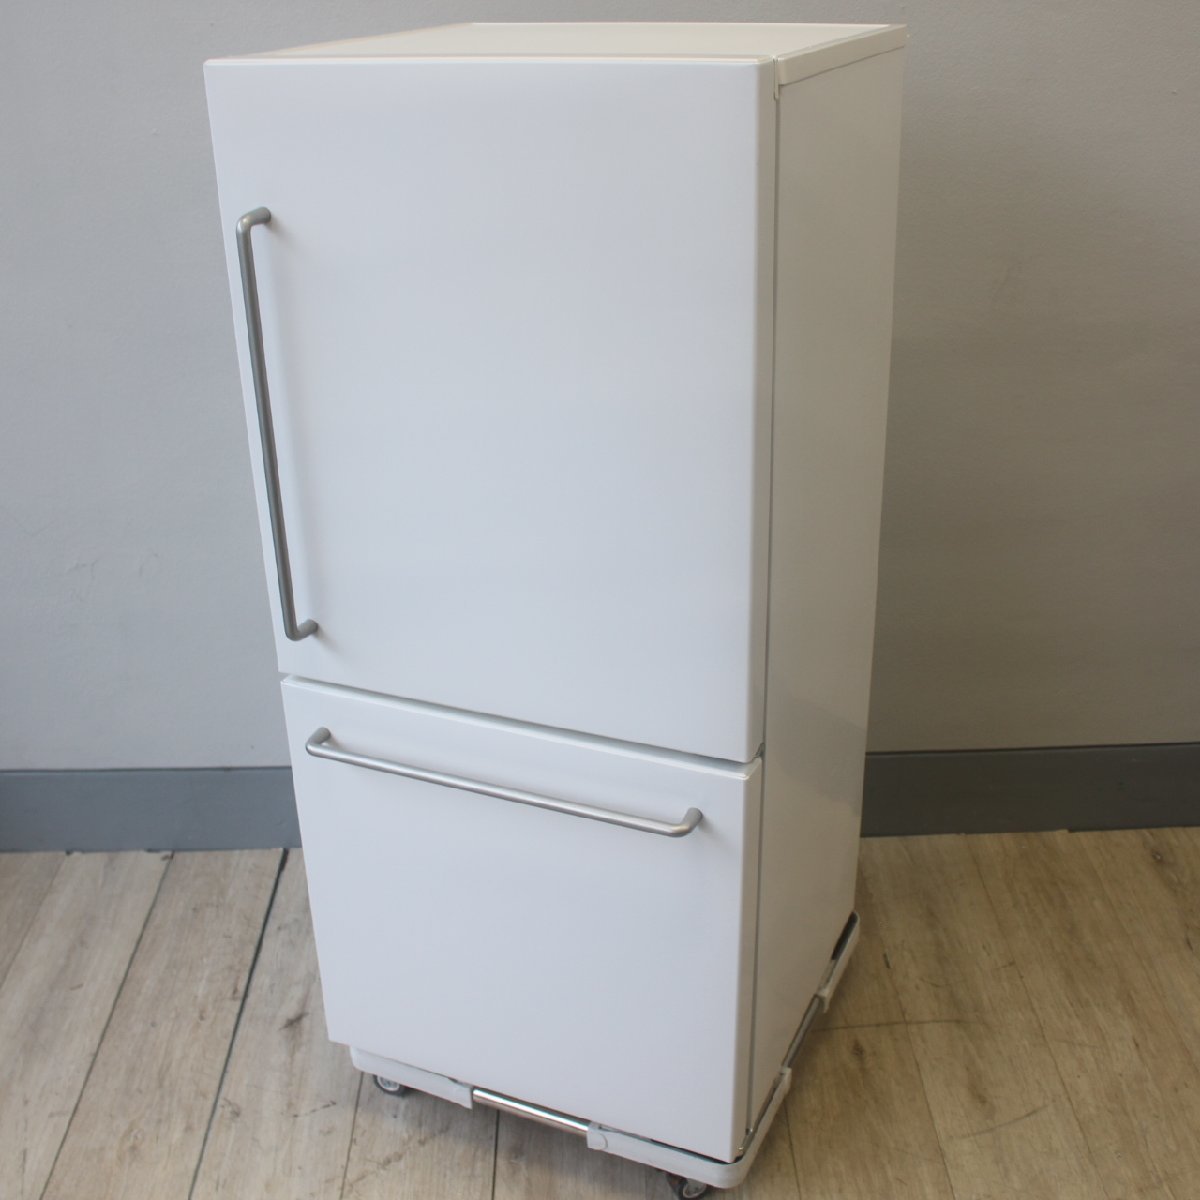 横浜市保土ヶ谷区にて 無印良品 ノンフロン冷凍冷蔵庫 MJ-R16A-2 2018年製 を出張買取させて頂きました。